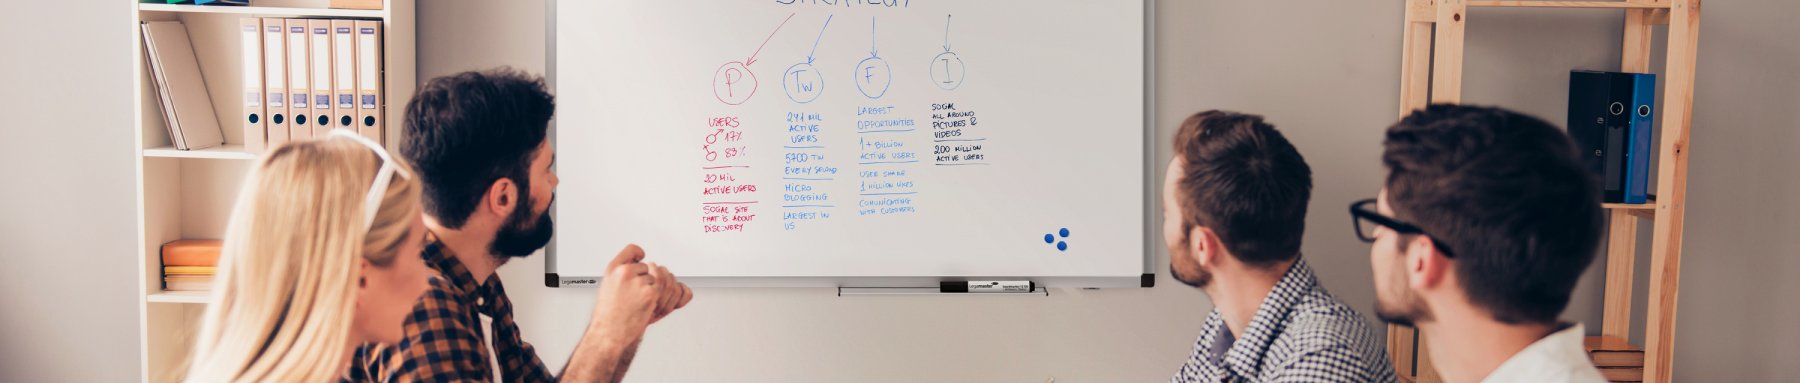 Ein Team von Fachleuten nahm an einer gemeinsamen Brainstorming-Sitzung vor einem Whiteboard mit verschiedenen Notizen und Diagrammen teil.